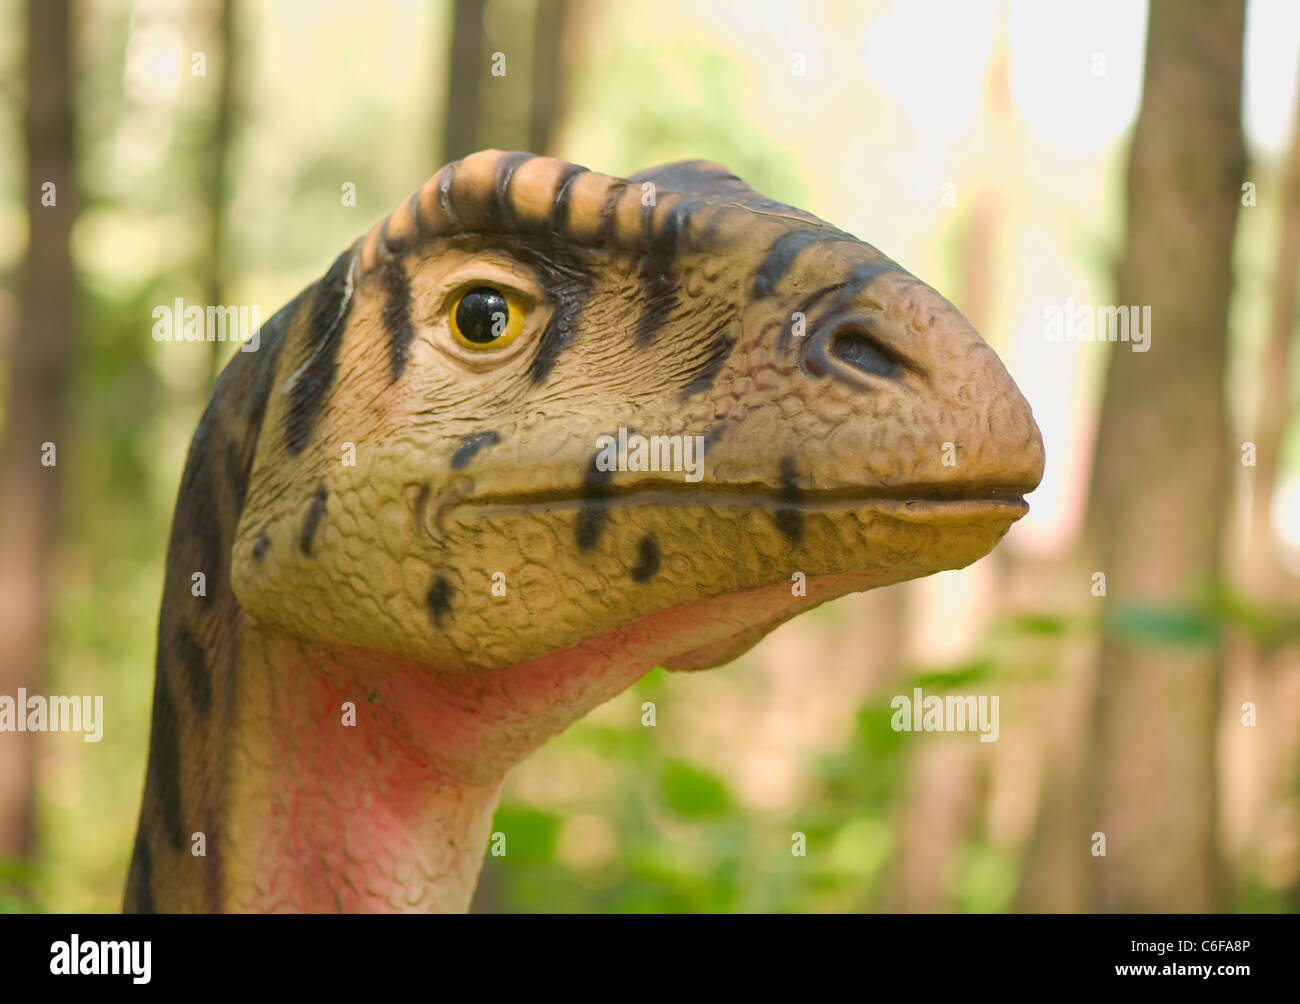 Dinosauro Vivente Immagini e Fotos Stock - Alamy